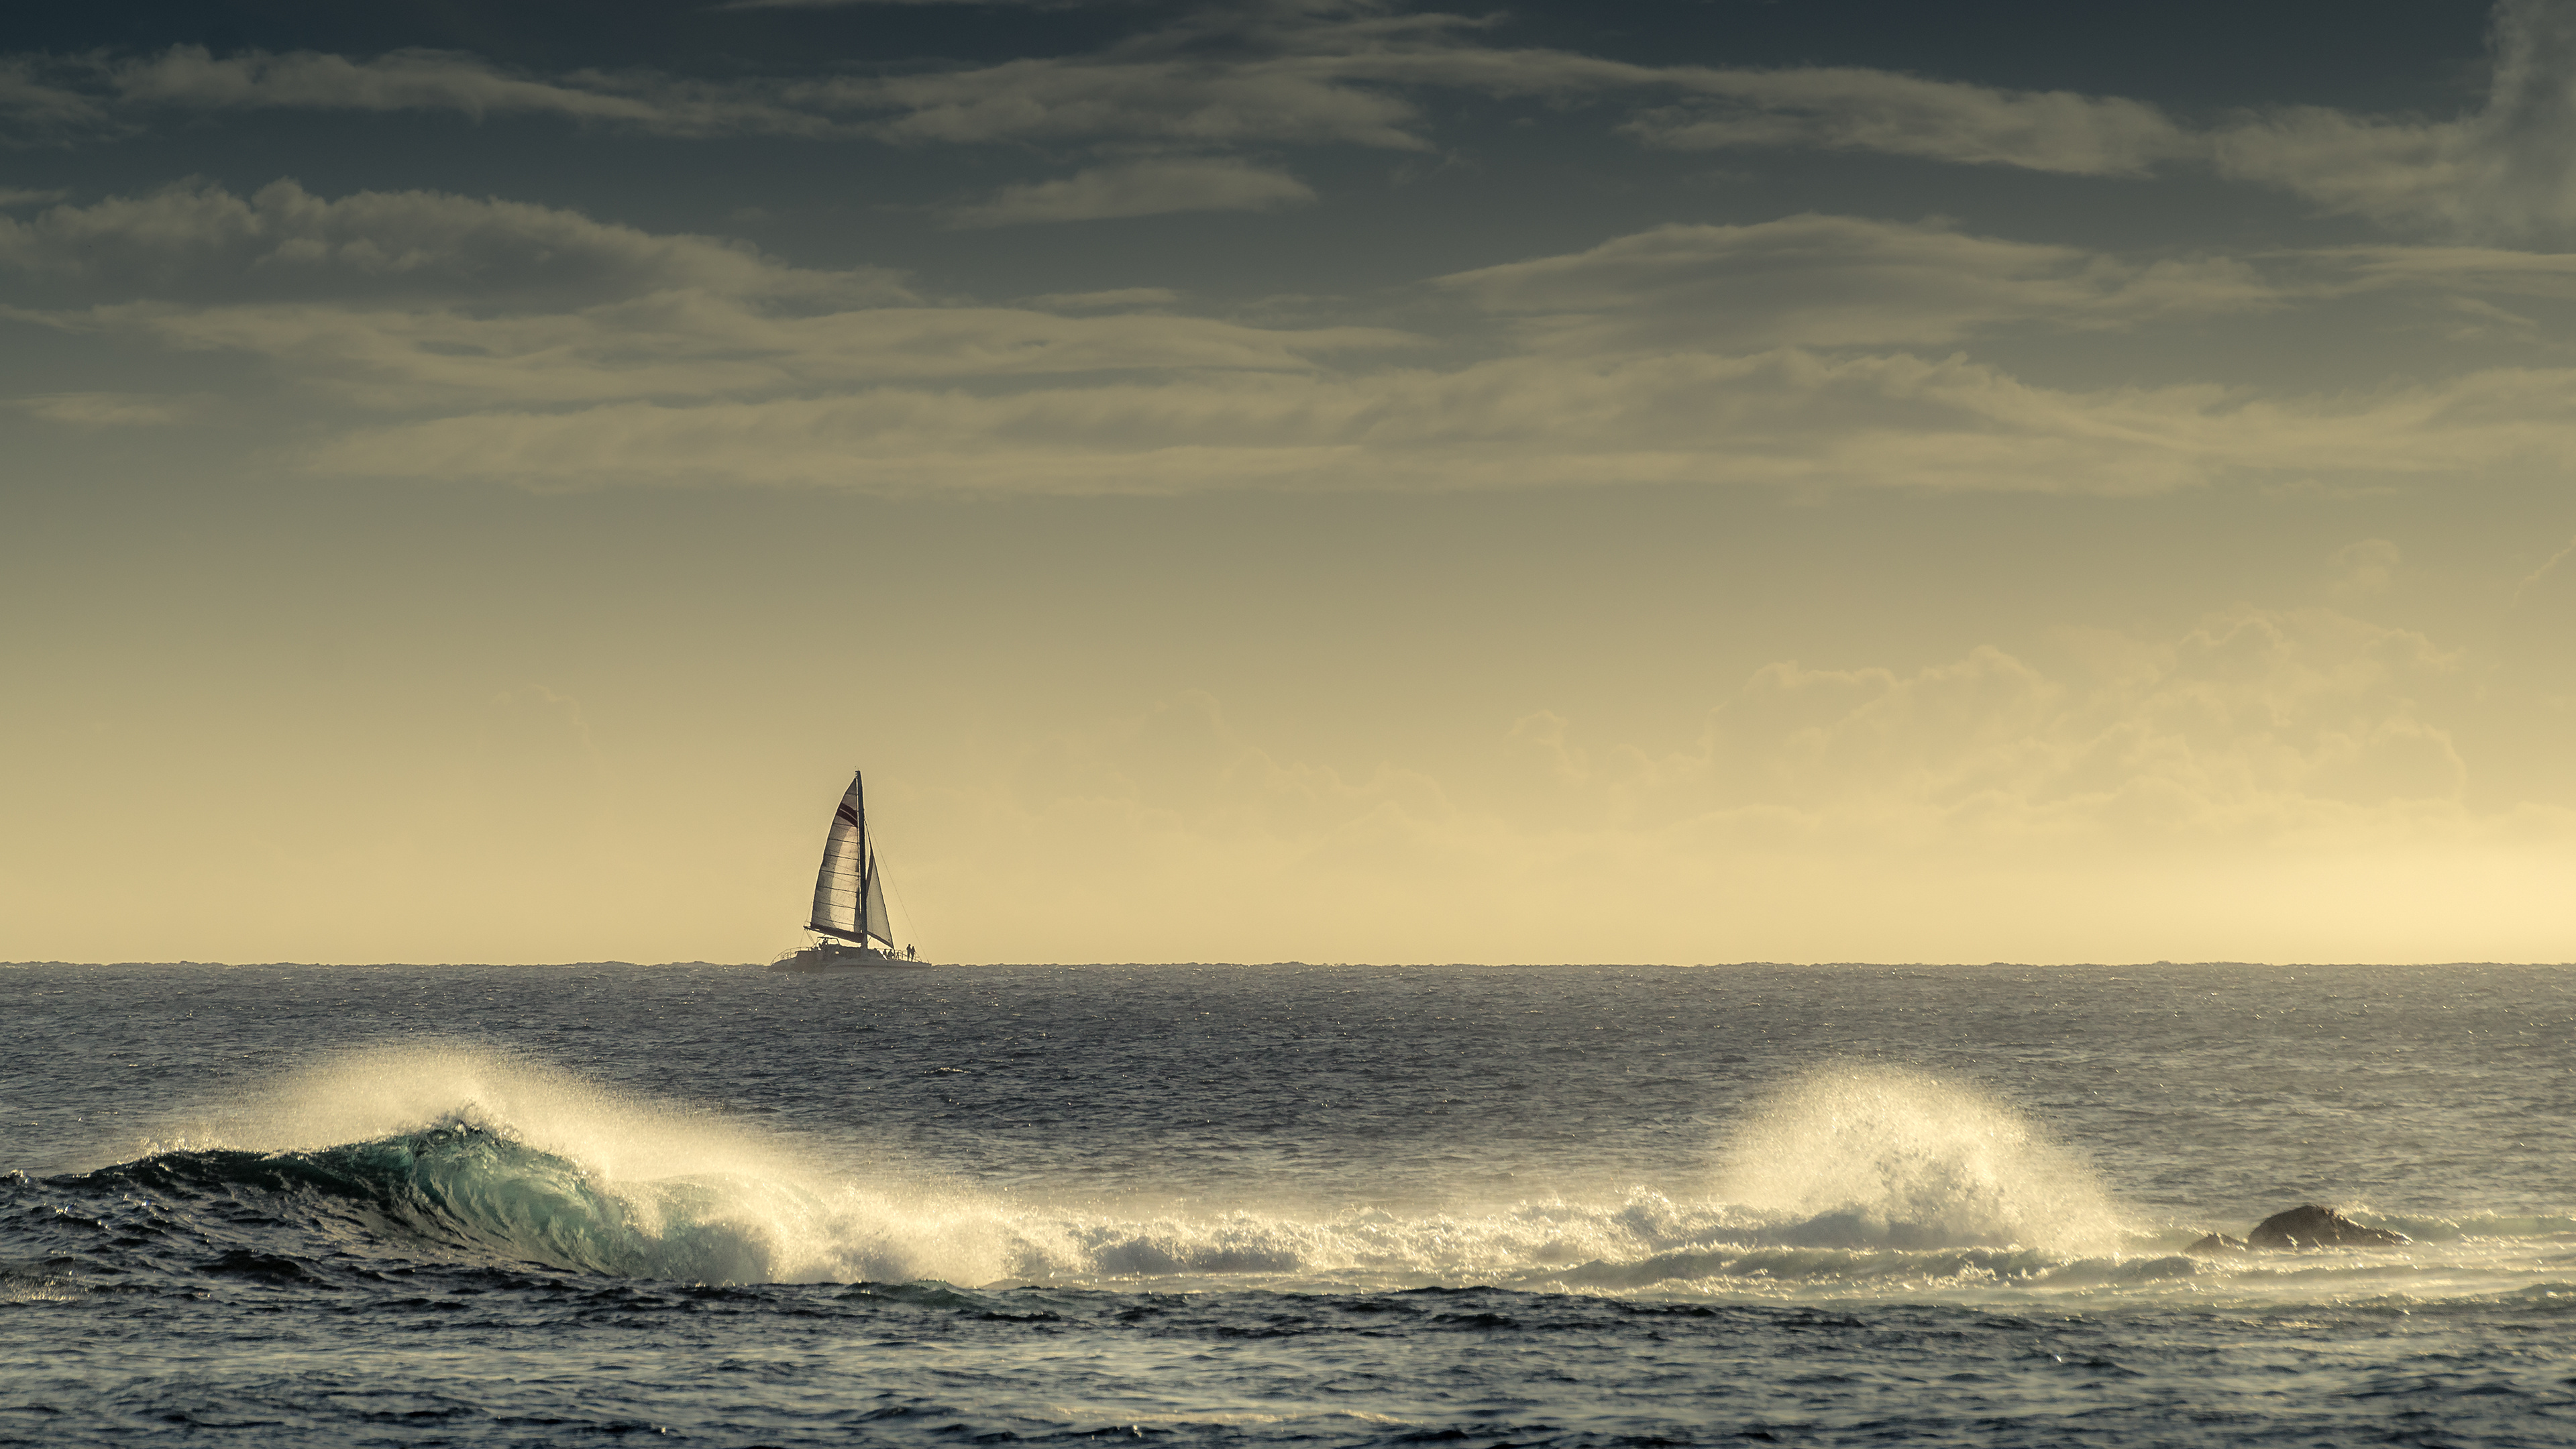 Seascape: A sailboat on its way at the horizon, Coastal waves, Endless water surface. 3840x2160 4K Wallpaper.